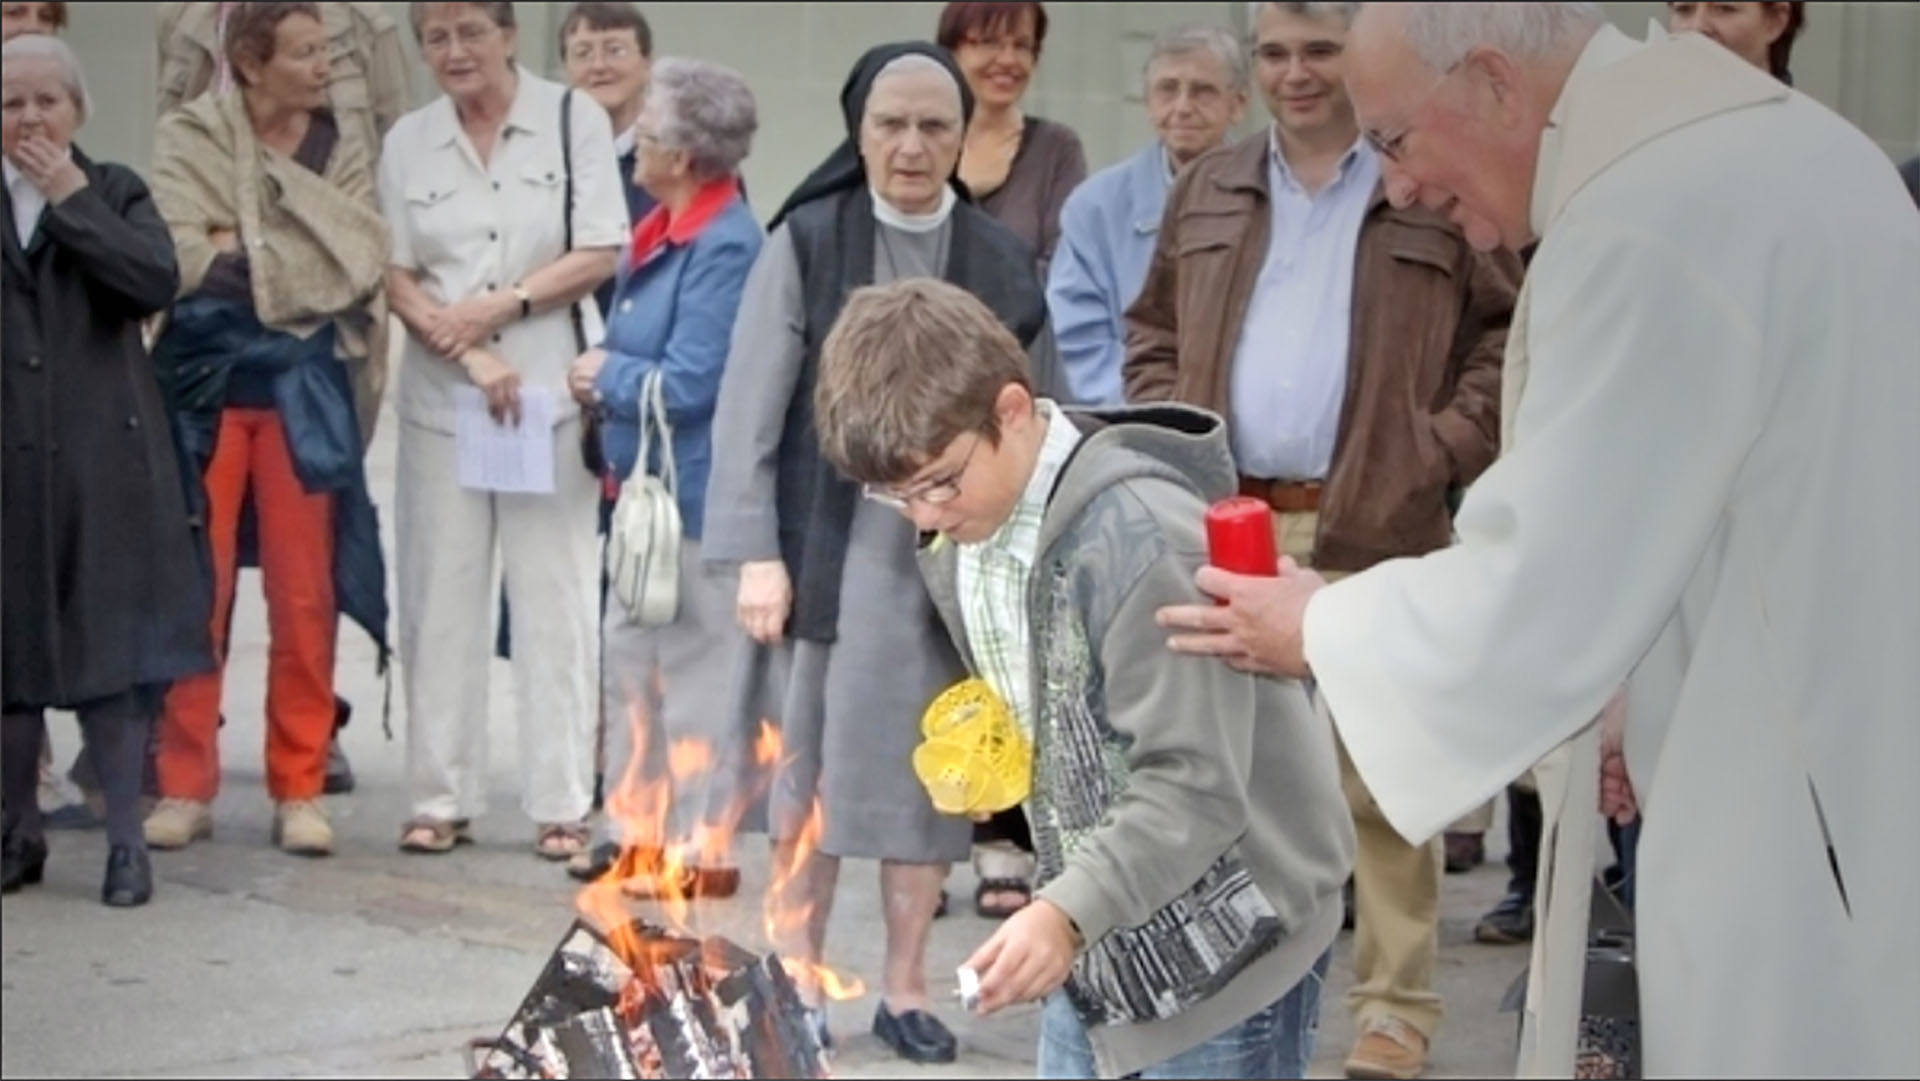 En 2011, le Feu pascal avait rassemblé plus d'une centaine de personnes de toutes confessions chrétiennes (Photo: cath.ch/archives)